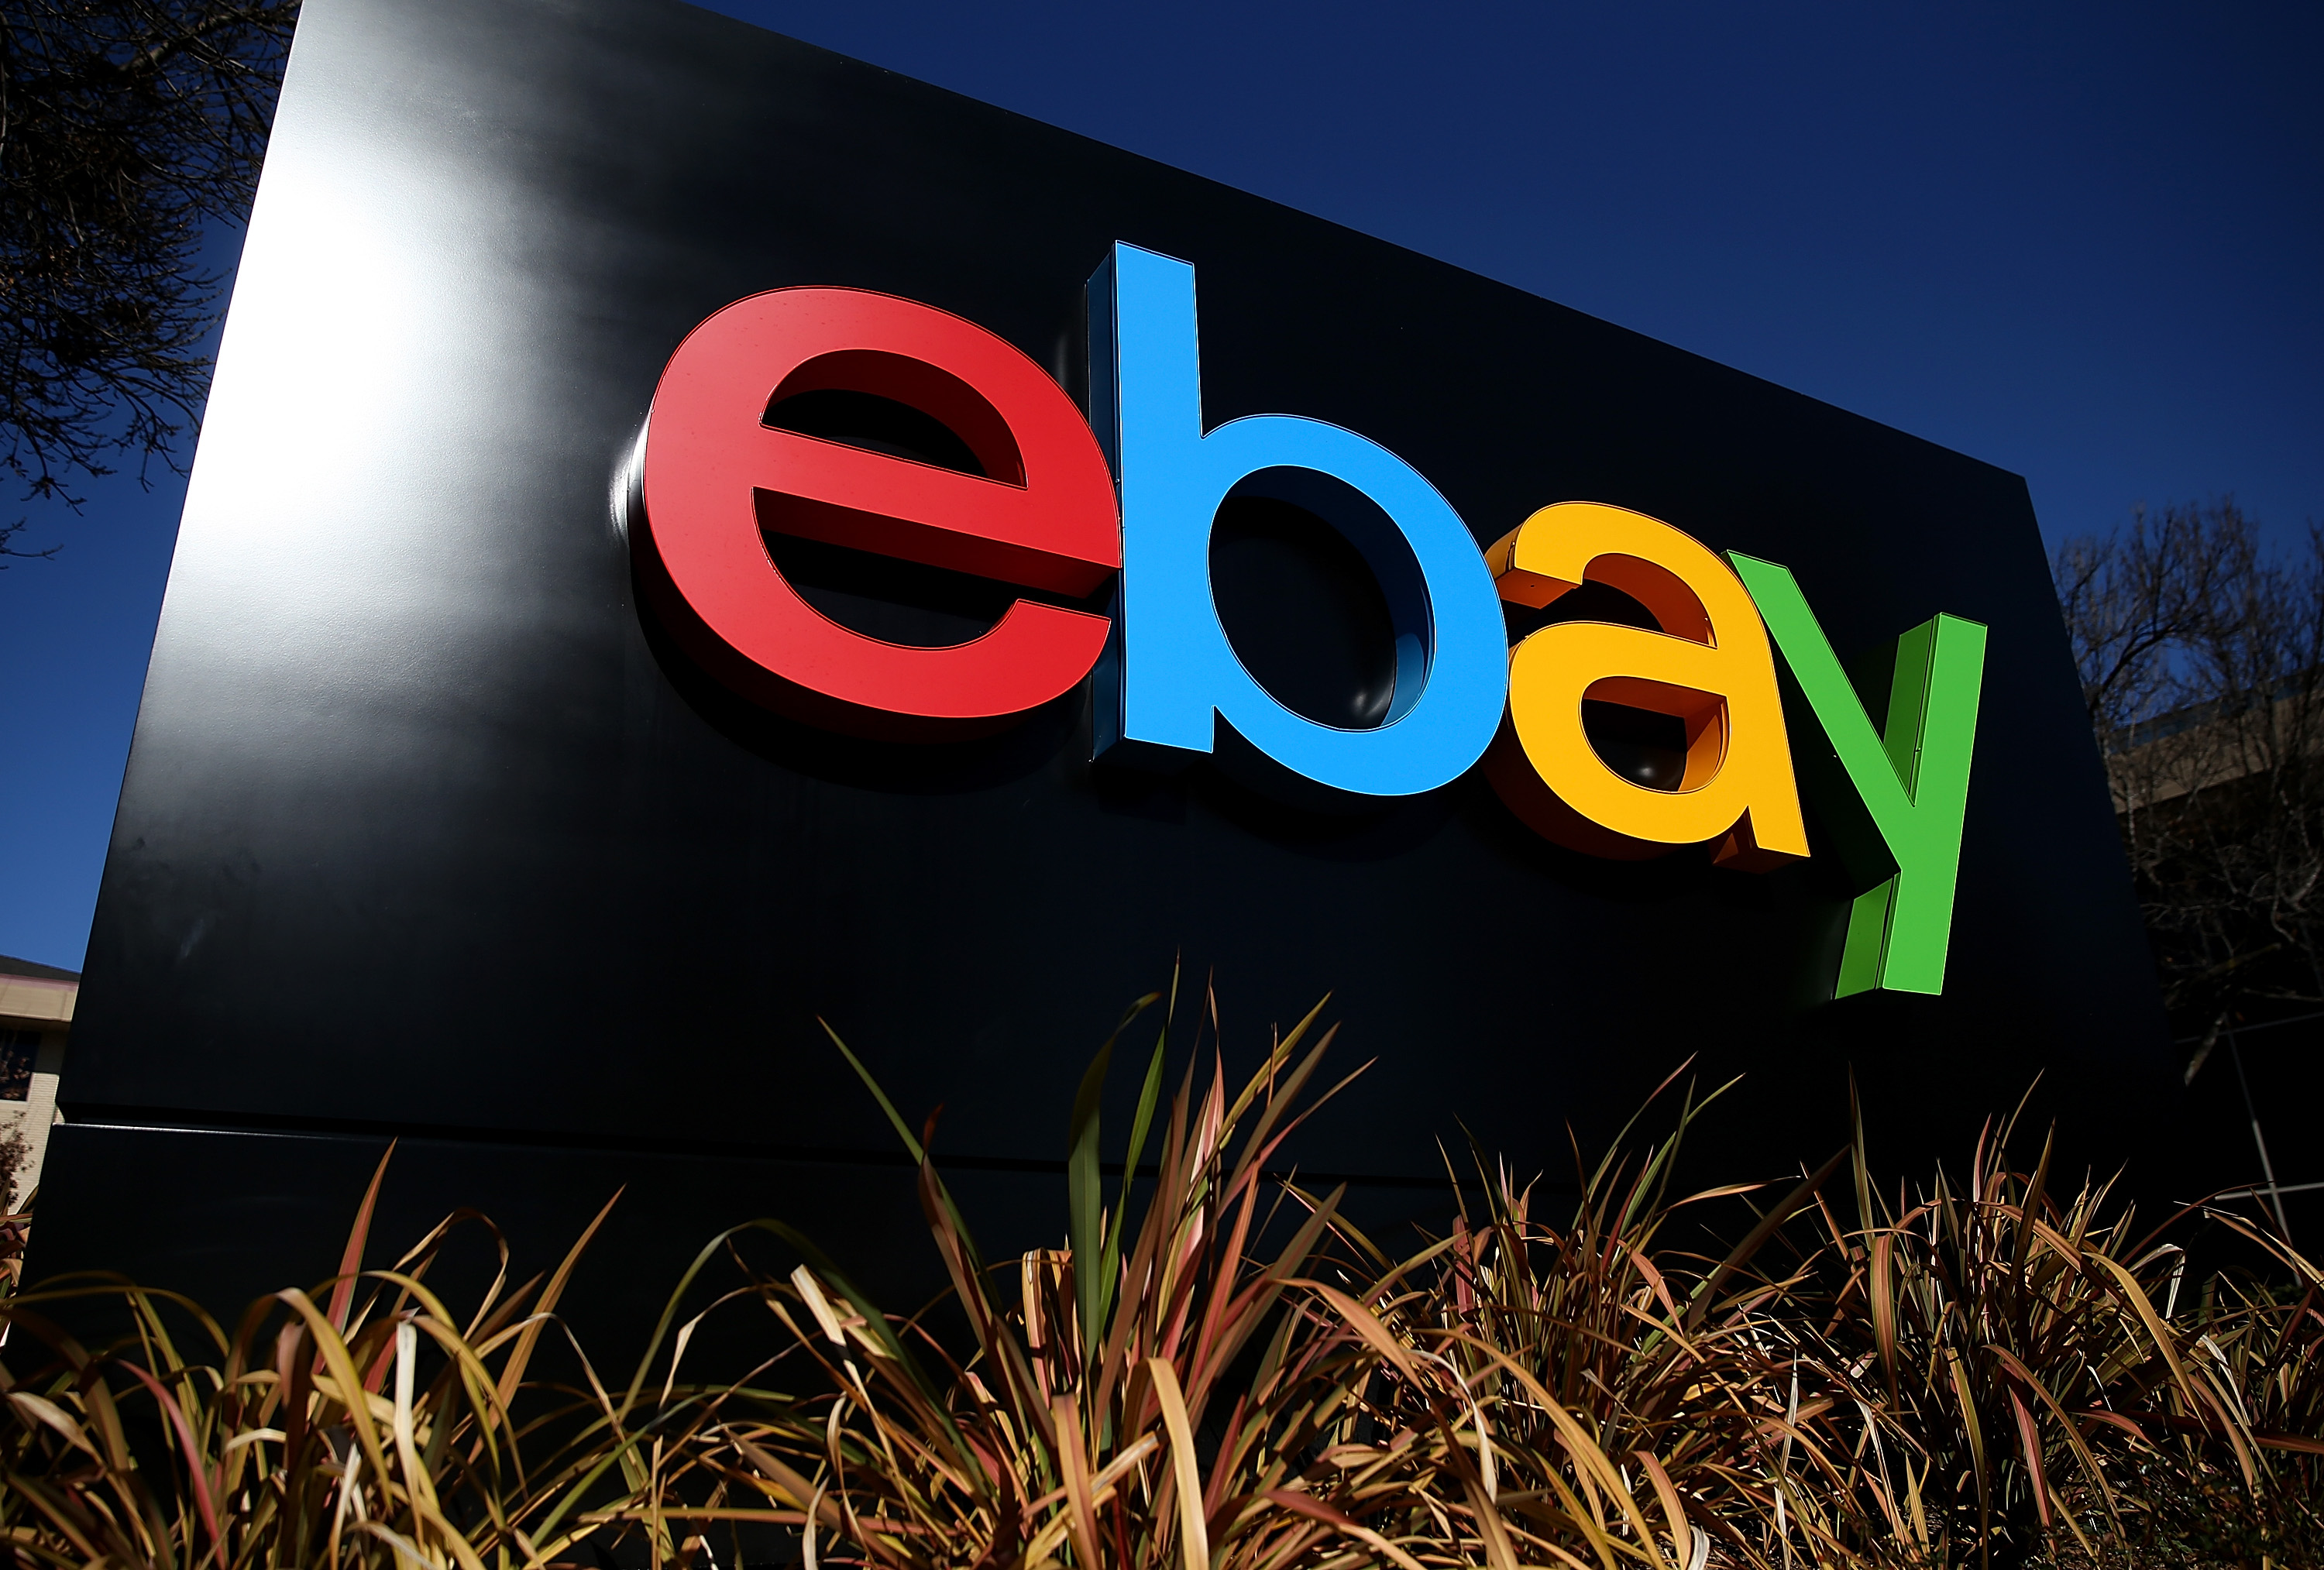 Ebay-Störung: Missachtet Ebay eigene AGB? Unternehmen verspricht betroffene Verkäufer zu kontaktieren